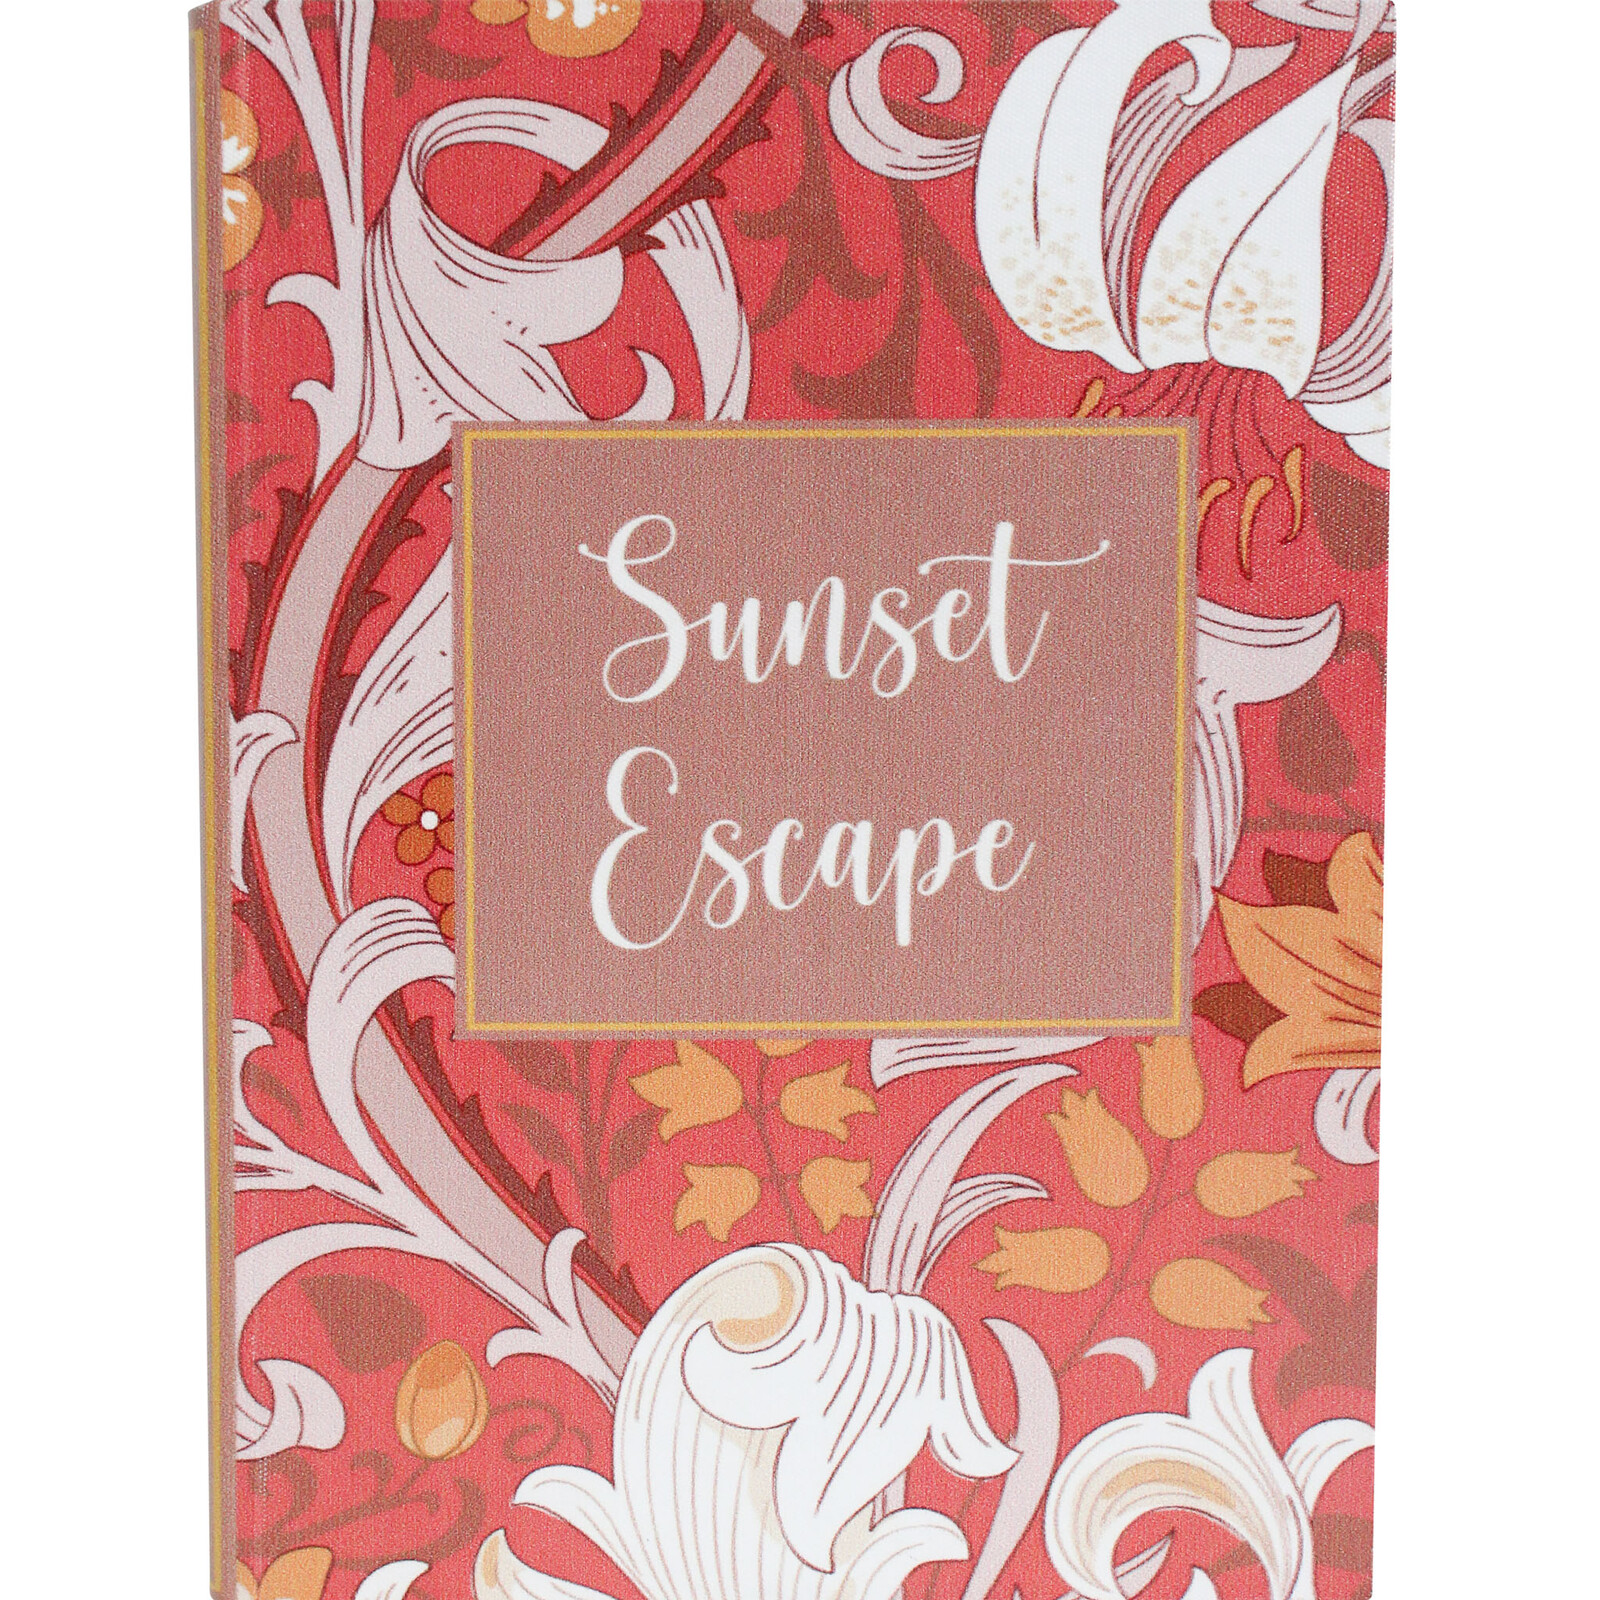 Book Box S/2 Sunset Escape